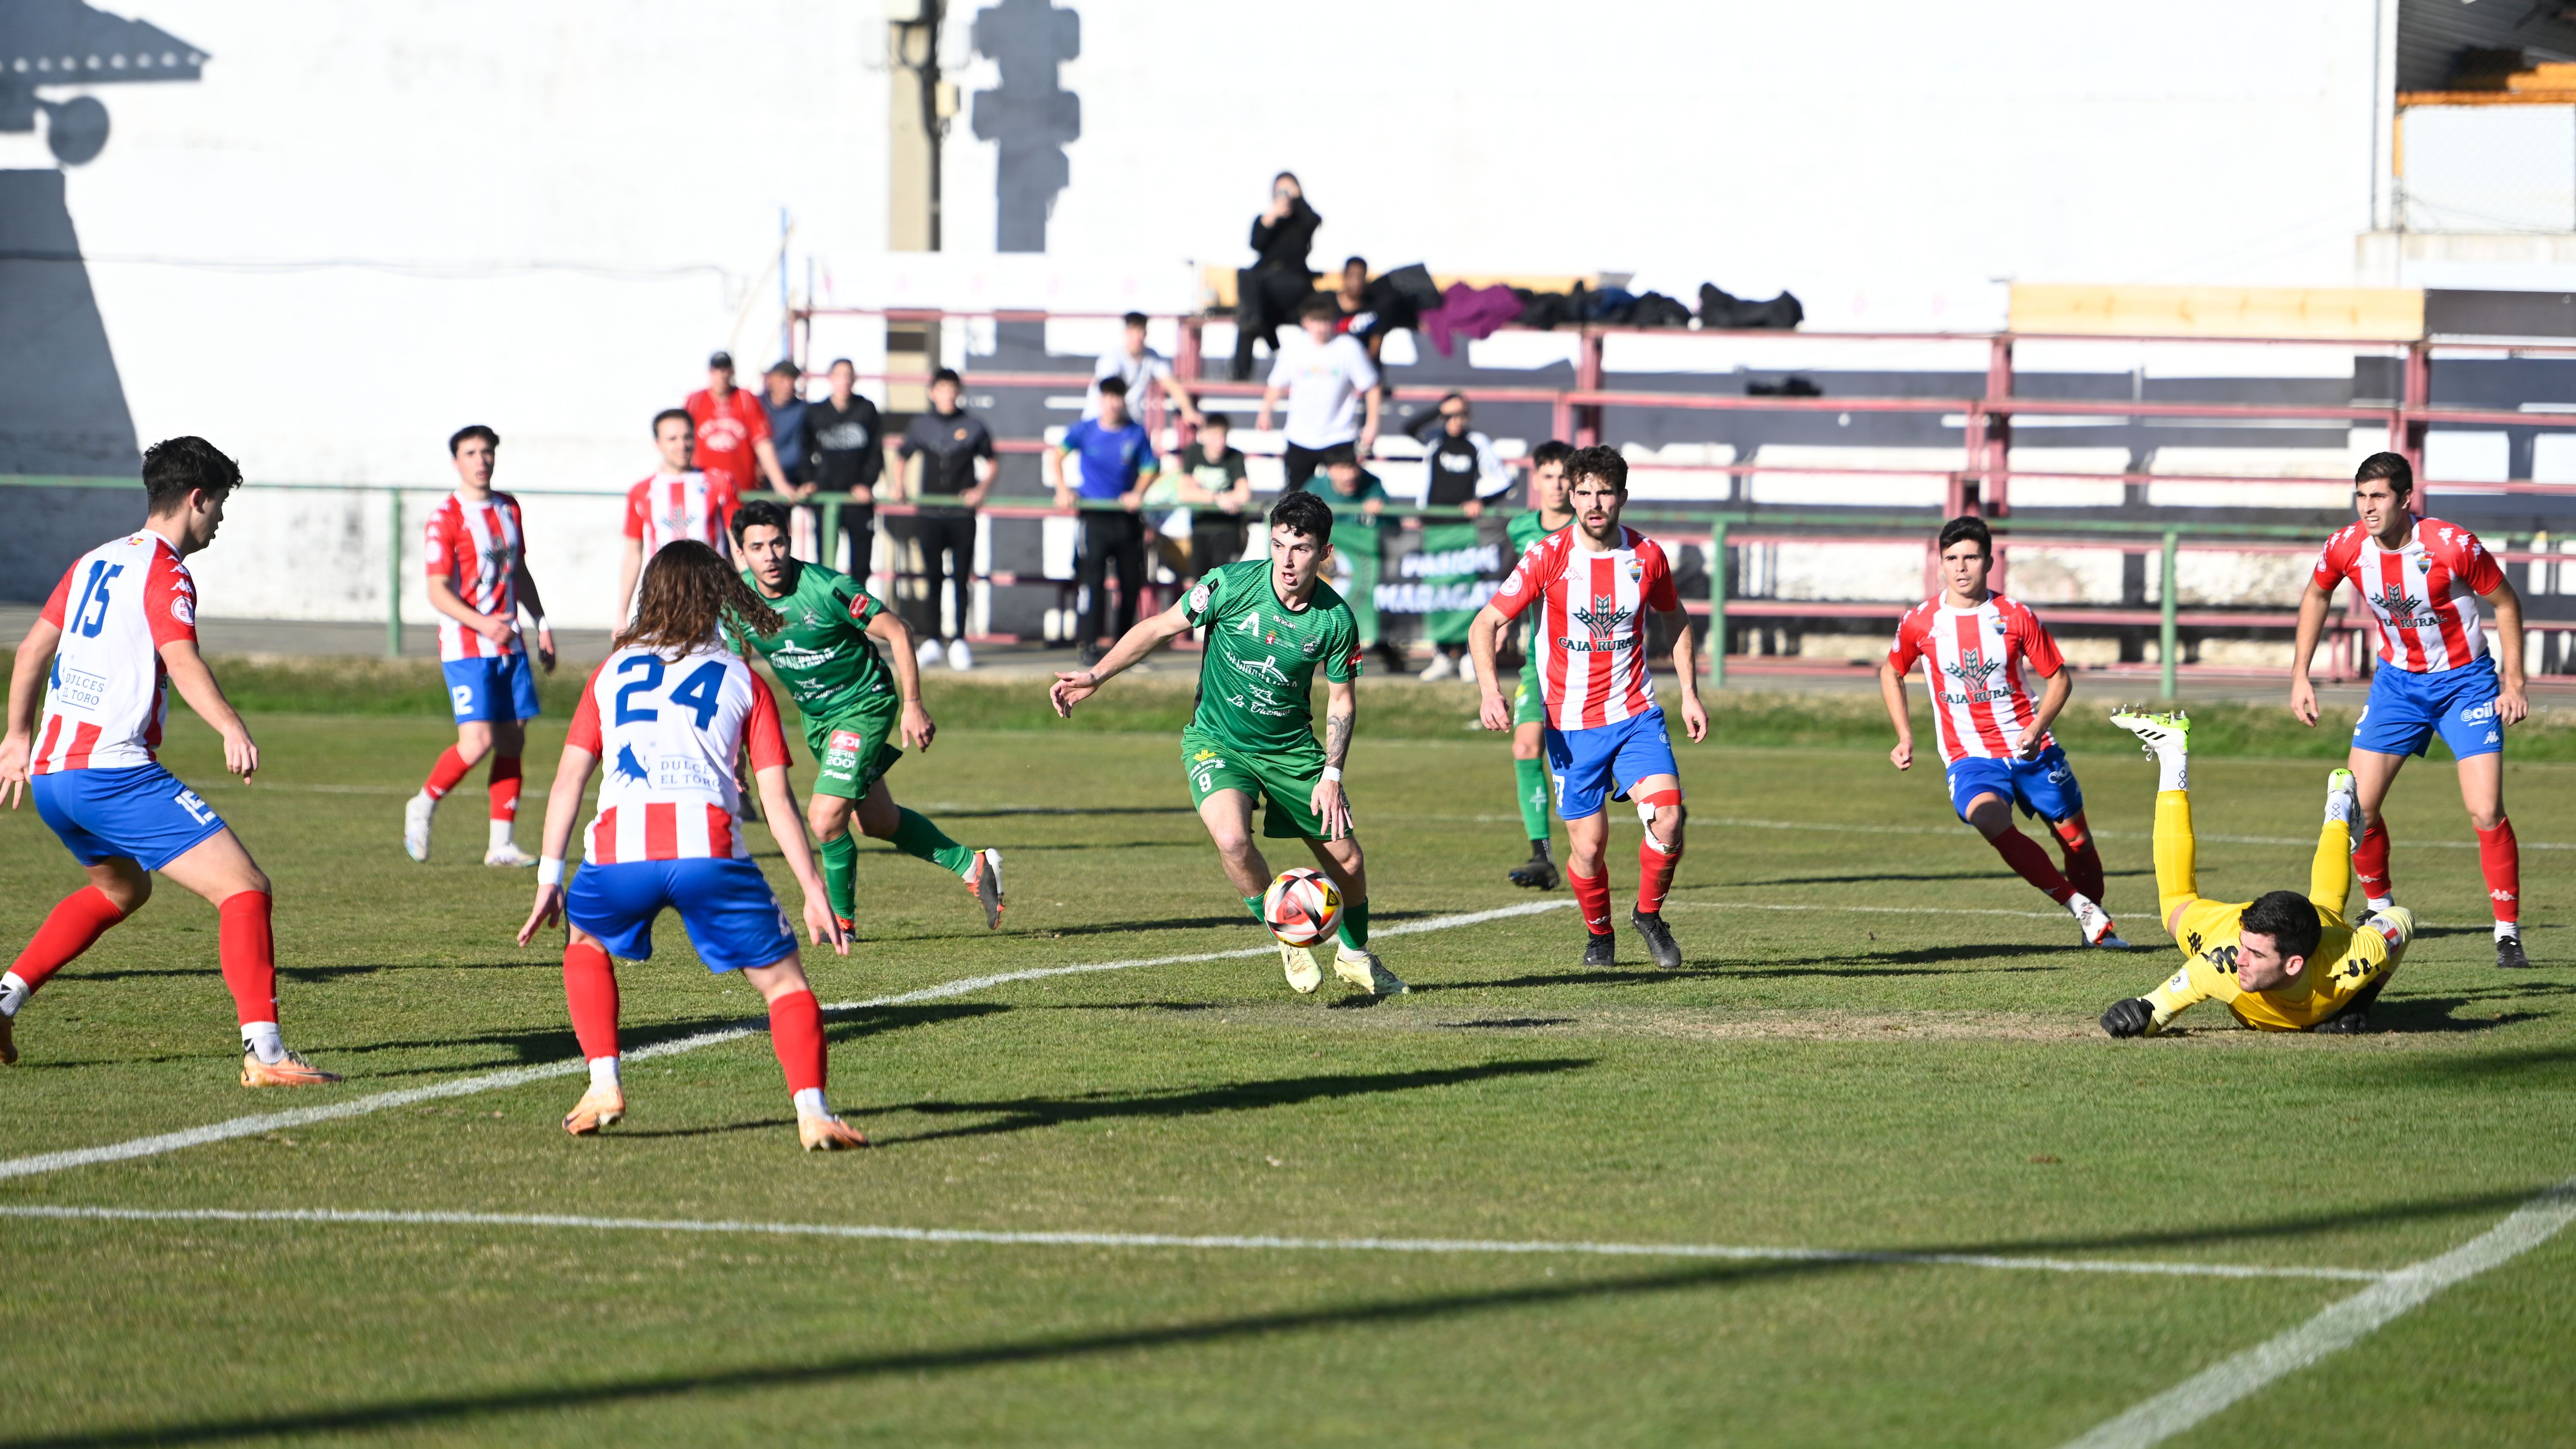 Momento del partido entre el Astorga y el Tordesillas. | SAÚL ARÉN